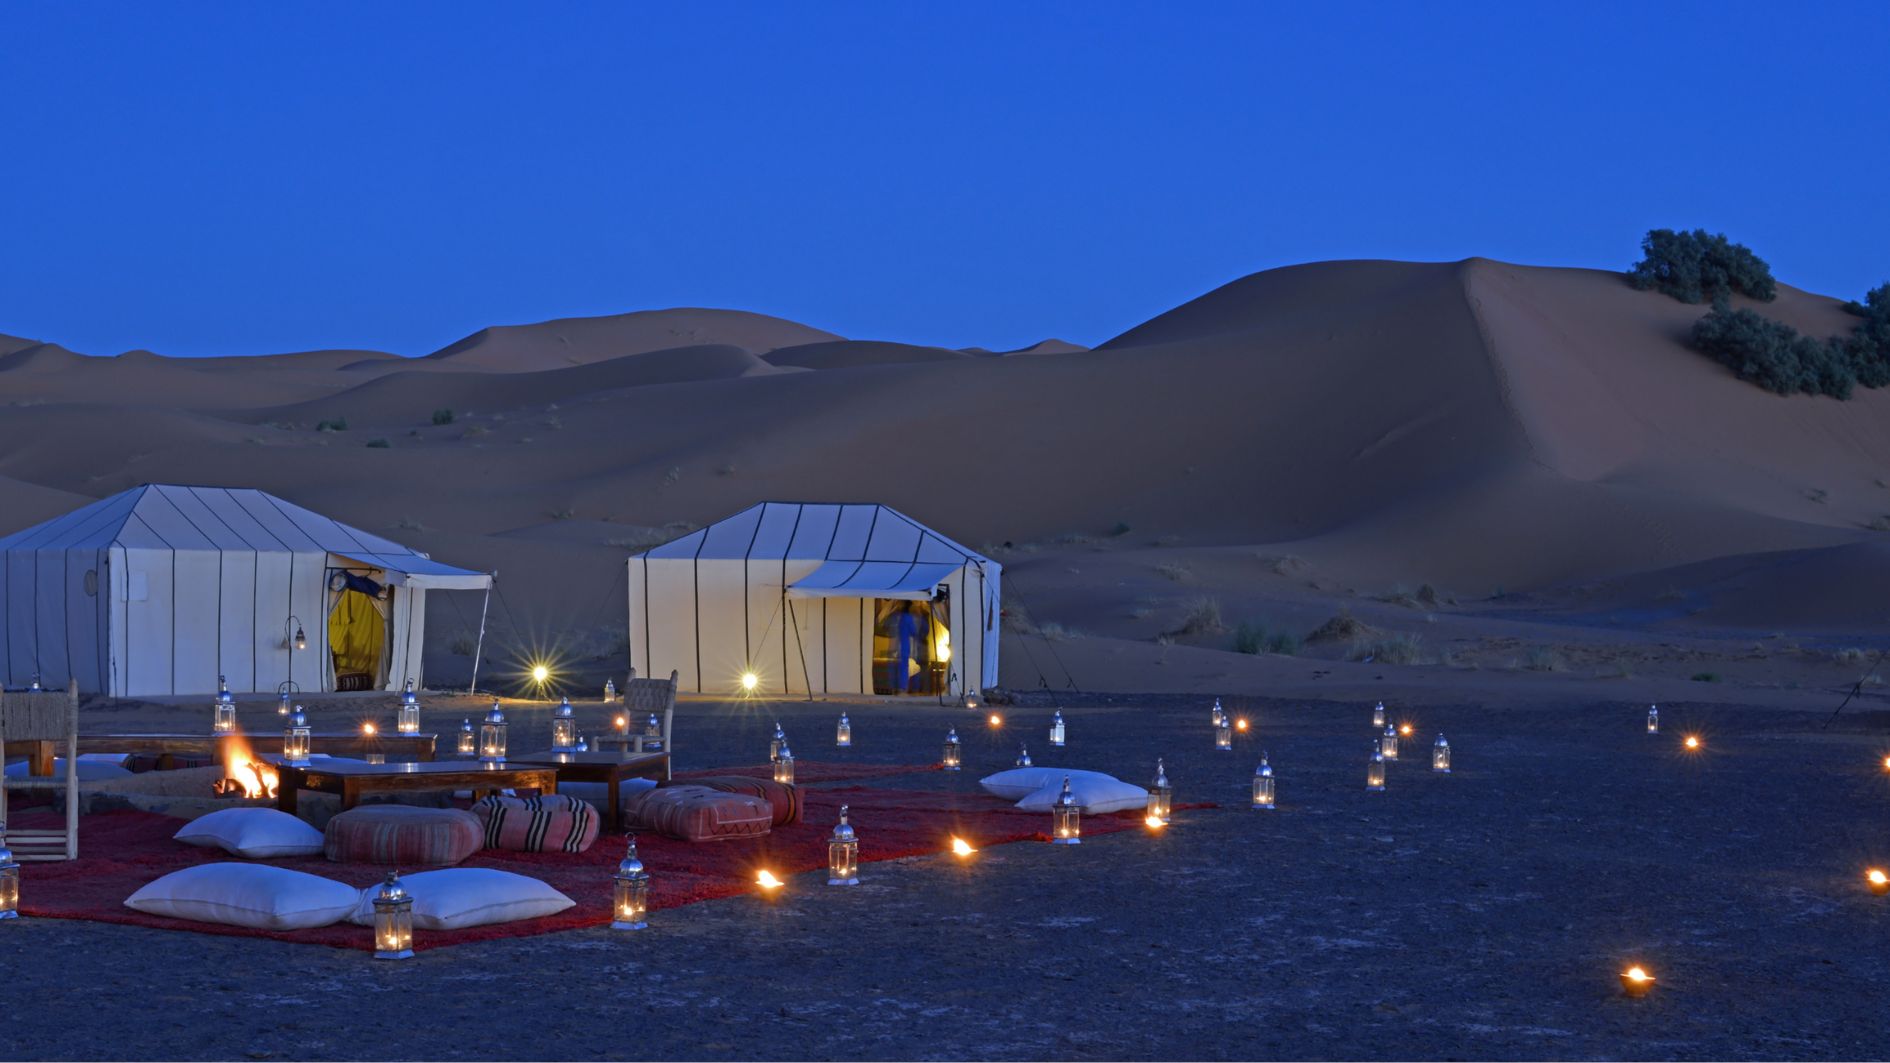 Private Morocco desert tours